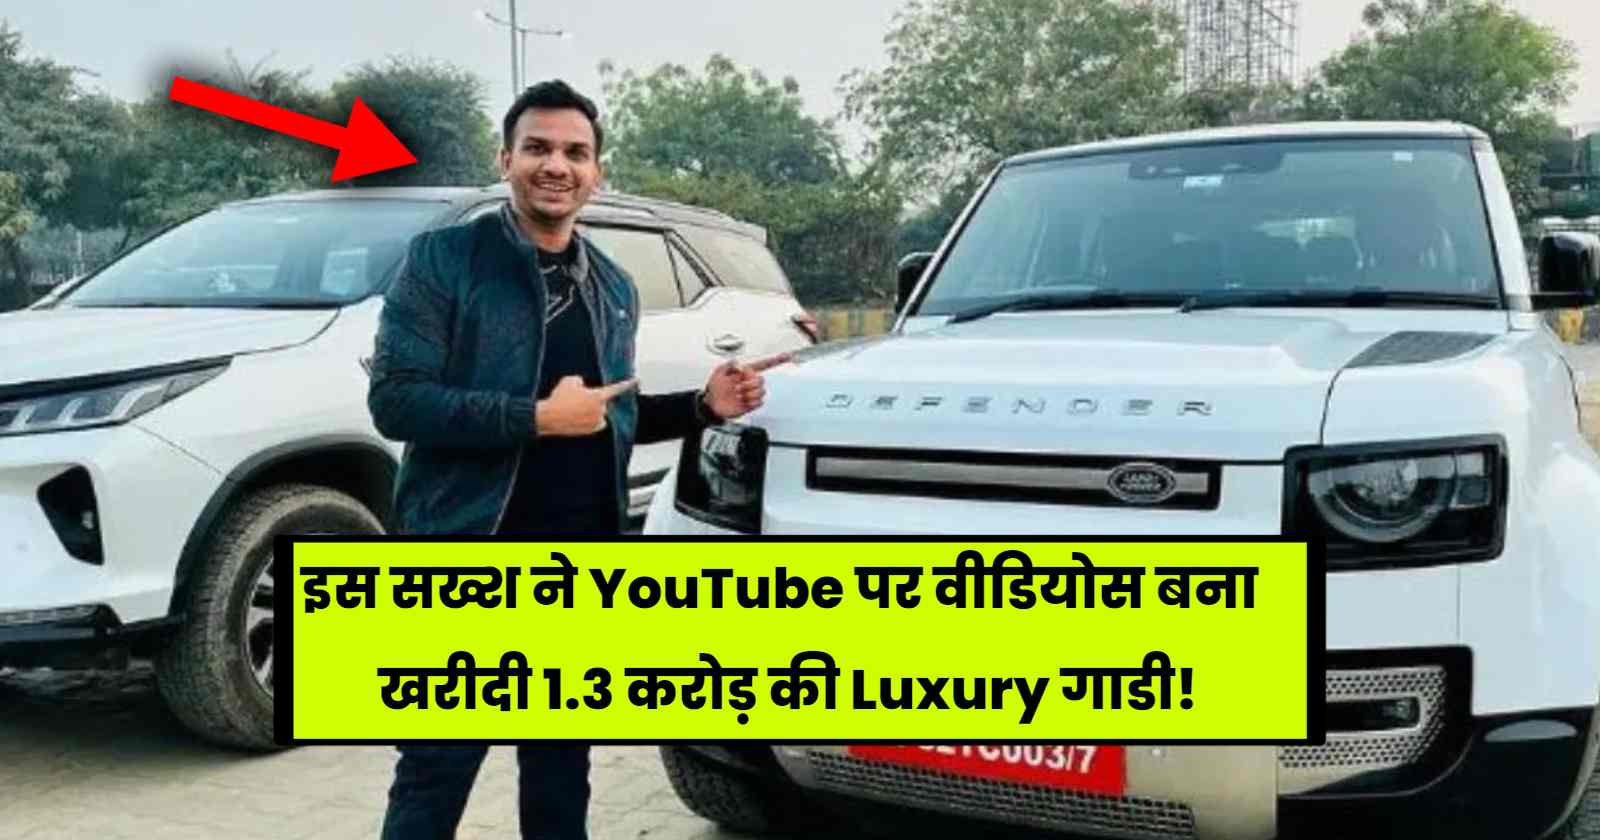 इस सख्श ने YouTube पर वीडियोस बना खरीदी 1.3 करोड़ की Luxury गाडी! hinditonews.in